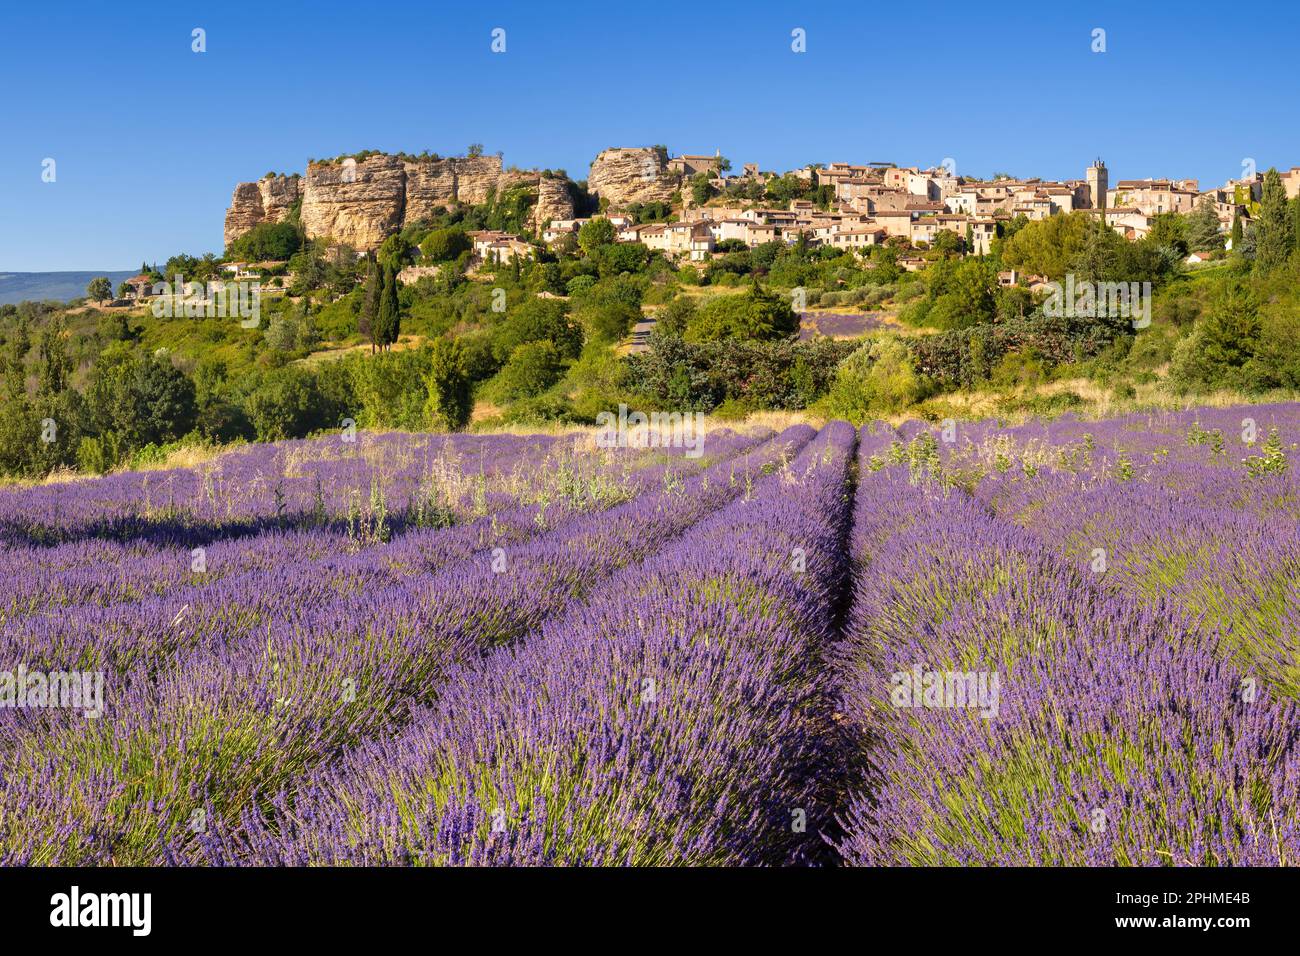 Le village de Saignon en Provence avec champ de lavande en été. Vaucluse, France Banque D'Images